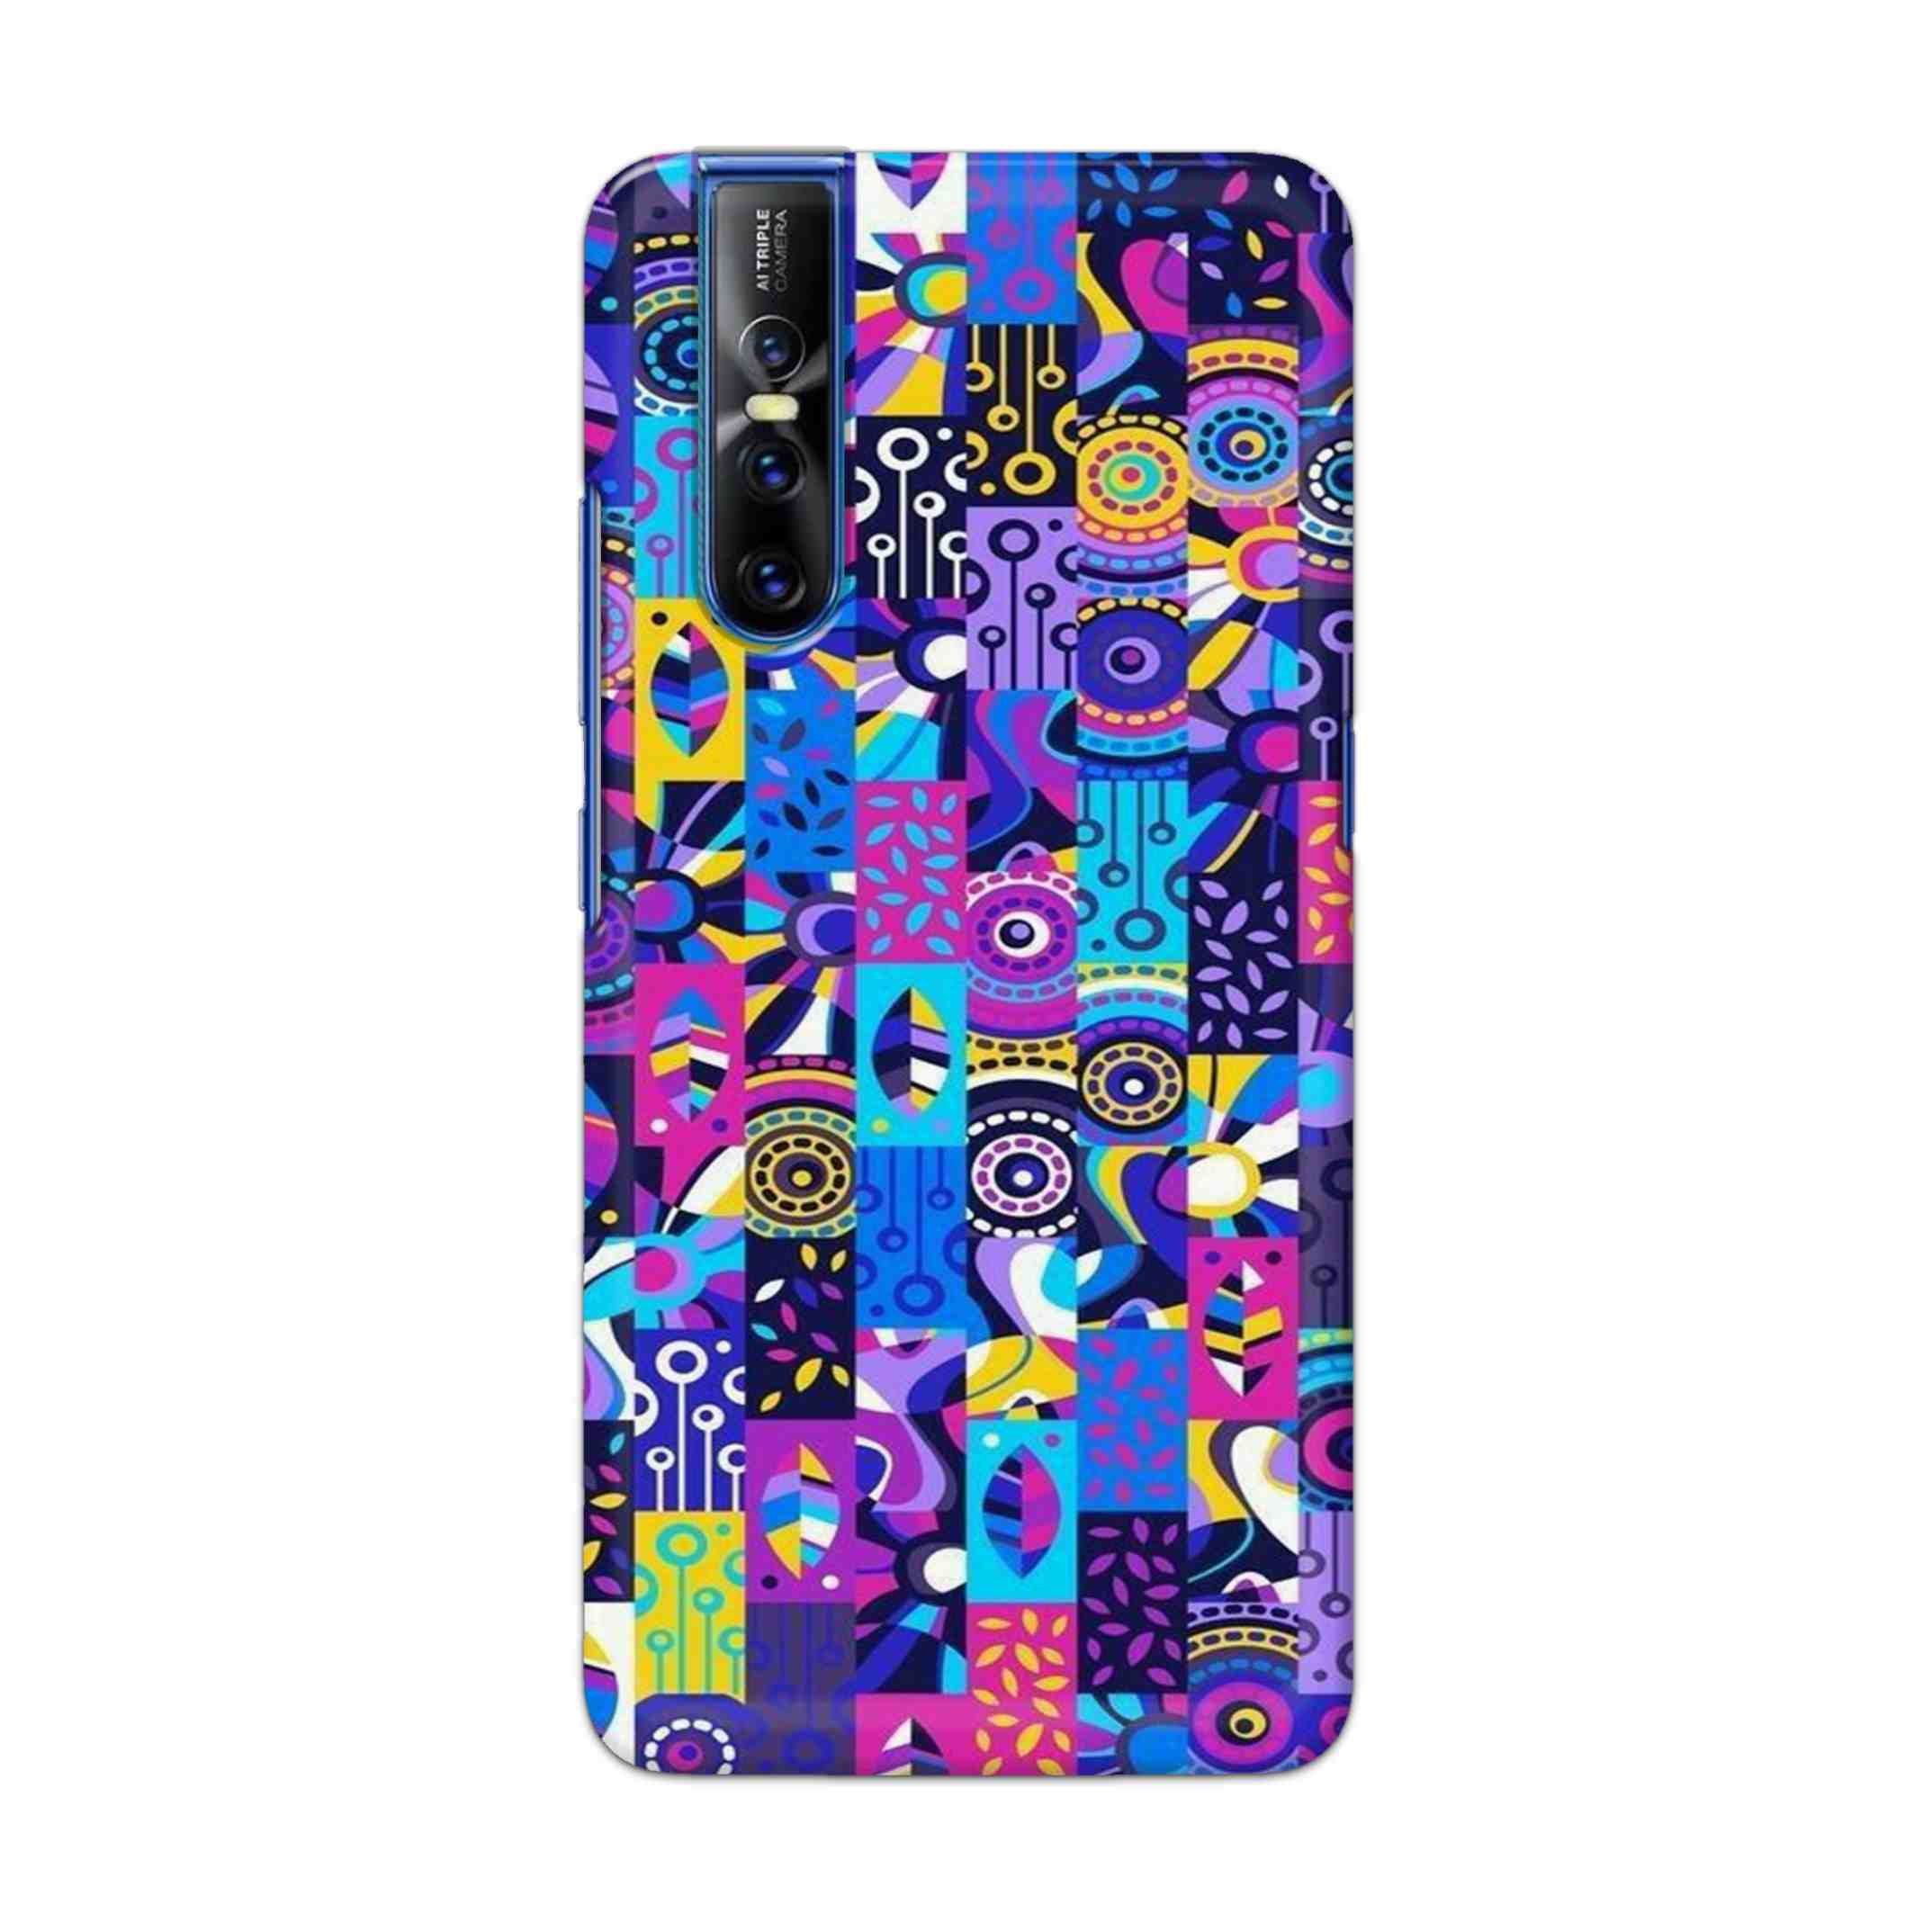 Buy Rainbow Art Hard Back Mobile Phone Case Cover For Vivo V15 Pro Online